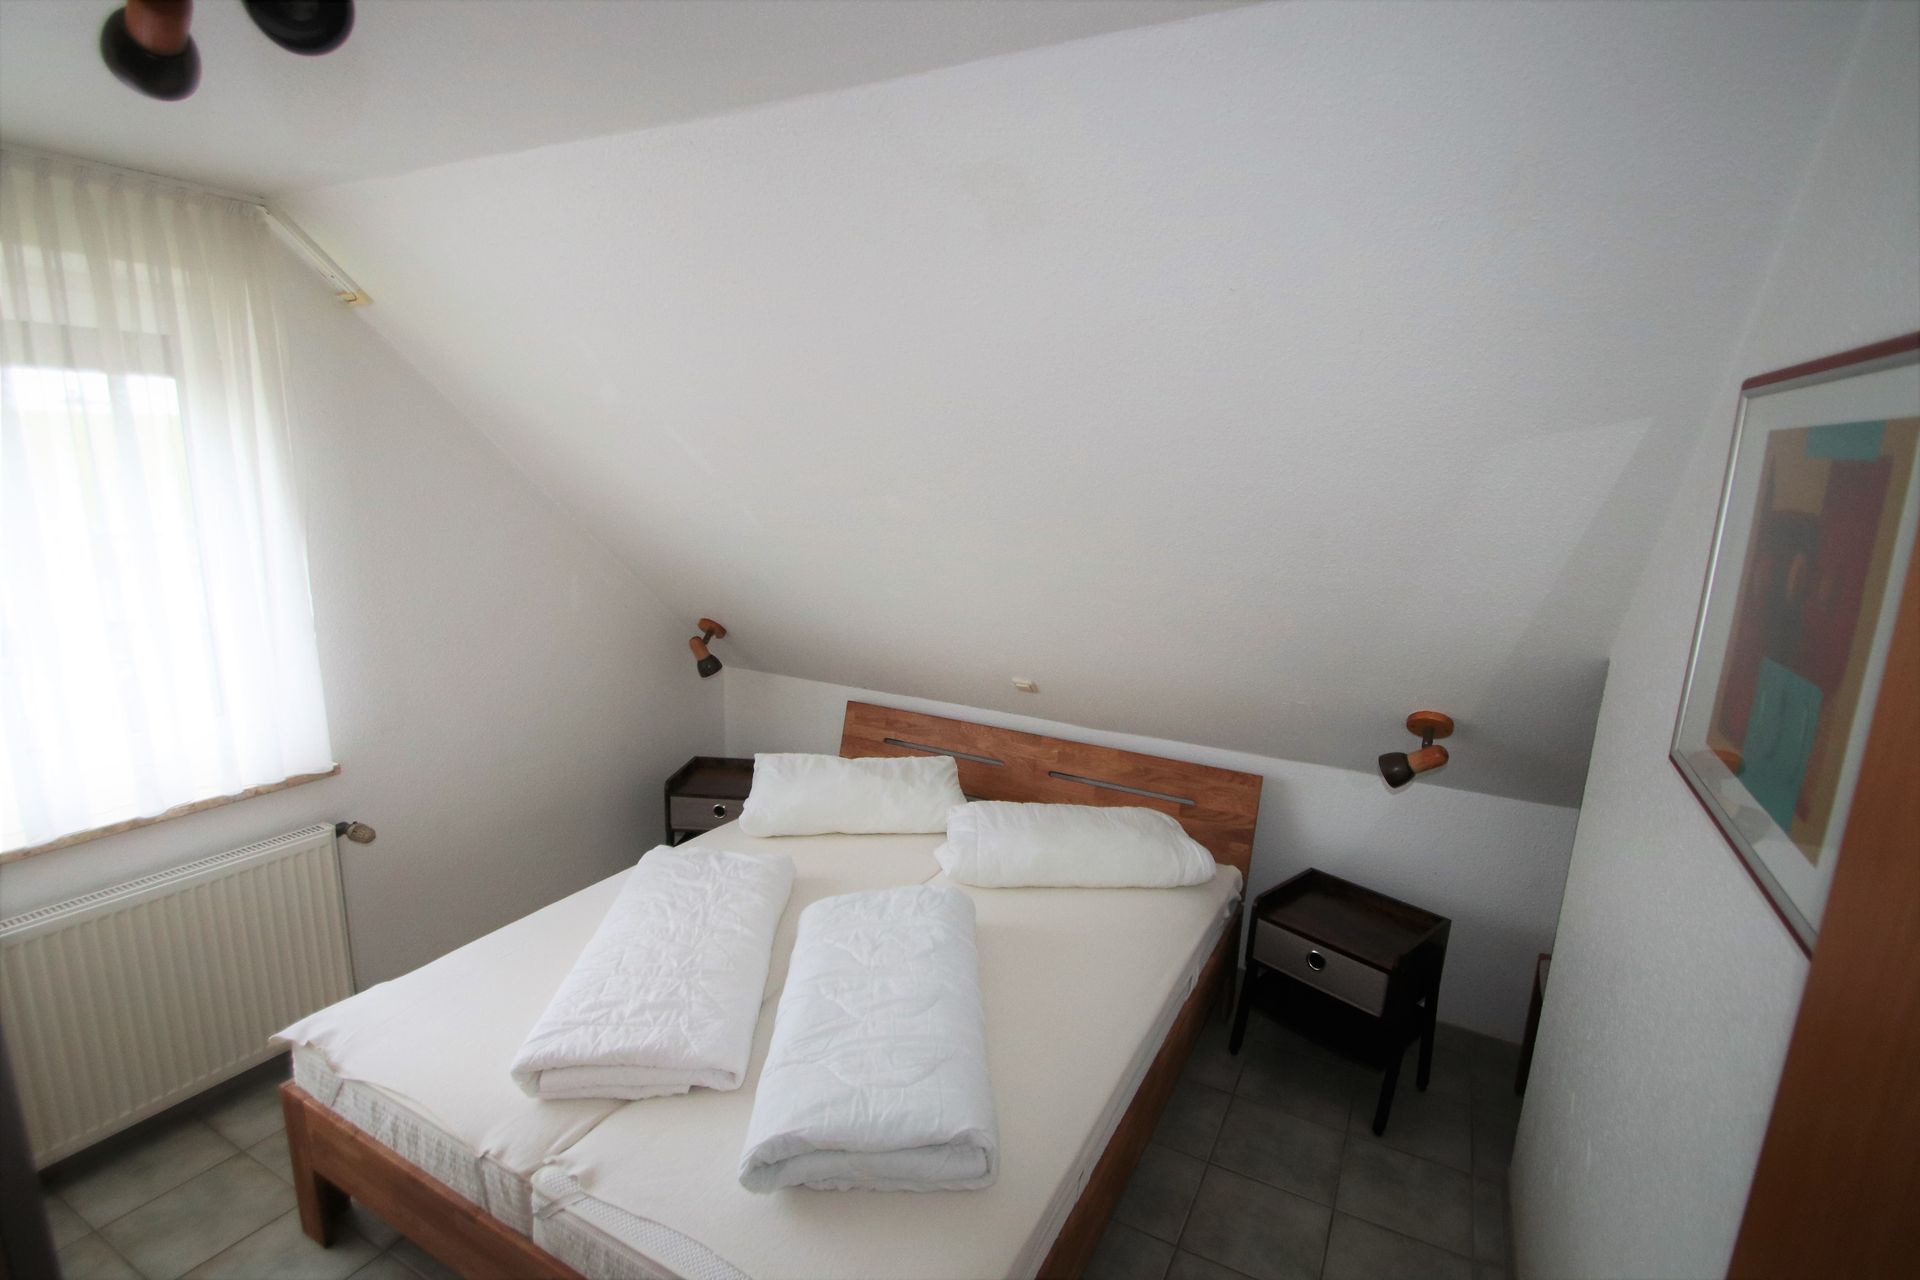 Schlafraum mit Doppelbett im  Obergeschoss Tötel 1b Ferienhaus Nordsee Friedrichskoog